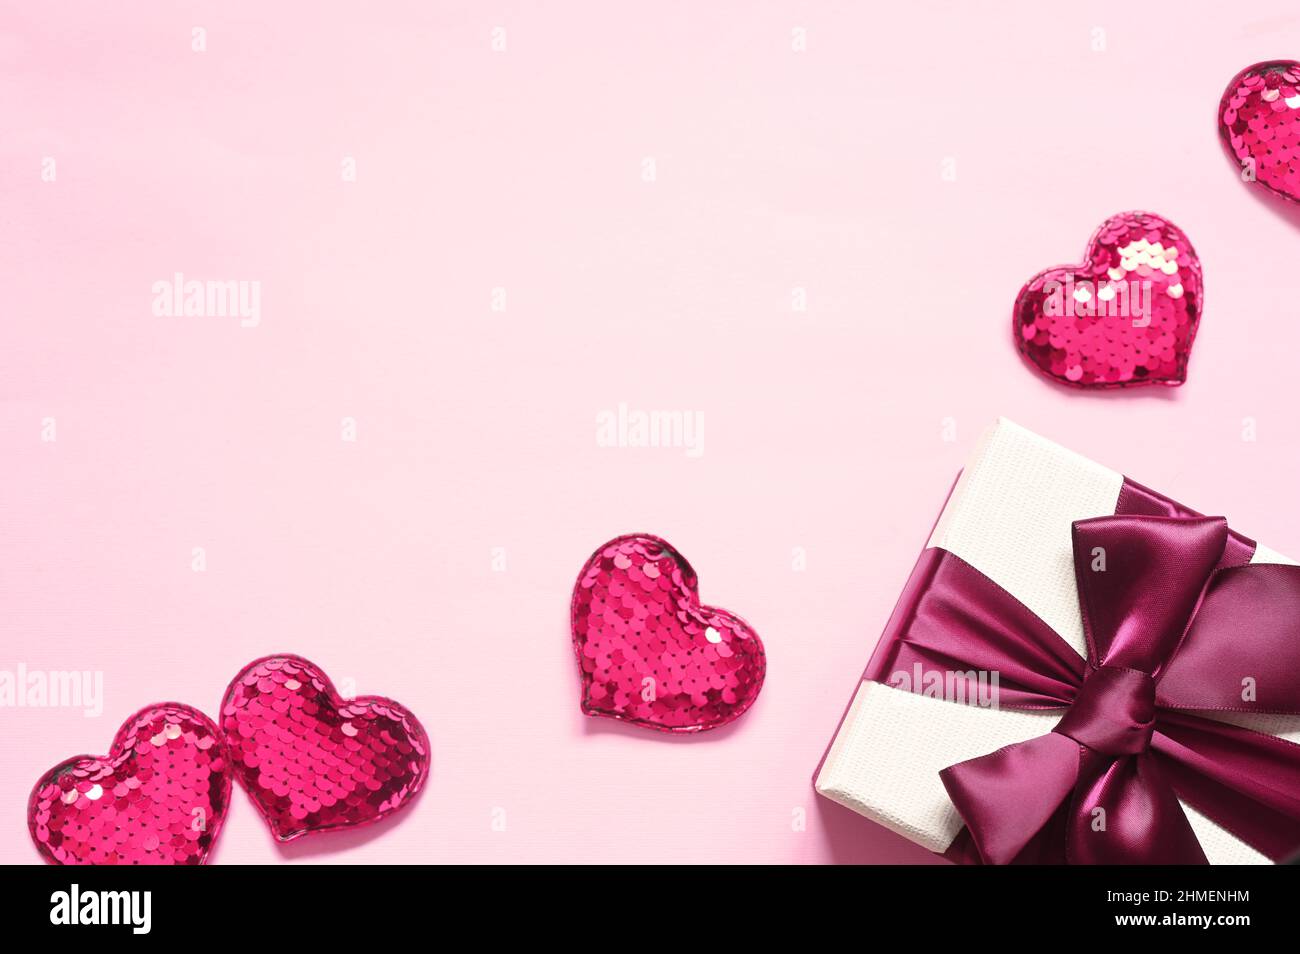 Vue du dessus photo des décorations de la Saint-Valentin. Boîte cadeau blanche avec noeud en ruban rose et petits coeurs sur fond rose isolé avec espace vide. Banque D'Images